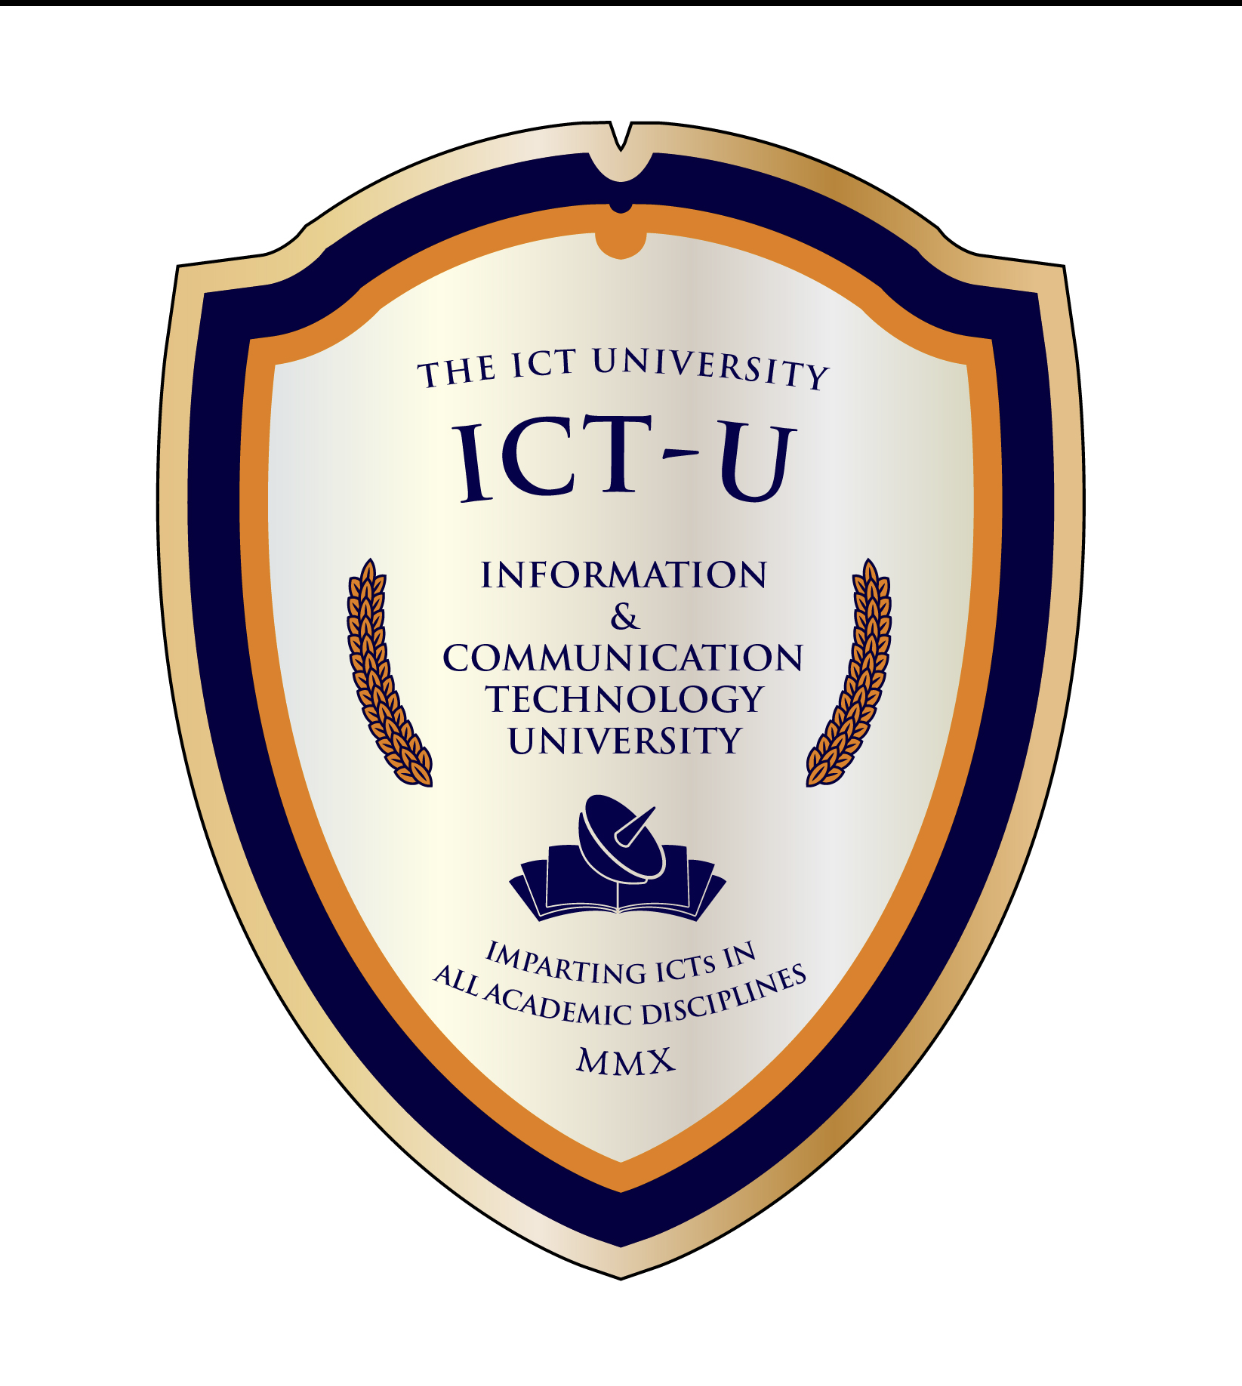 The ICT University logo